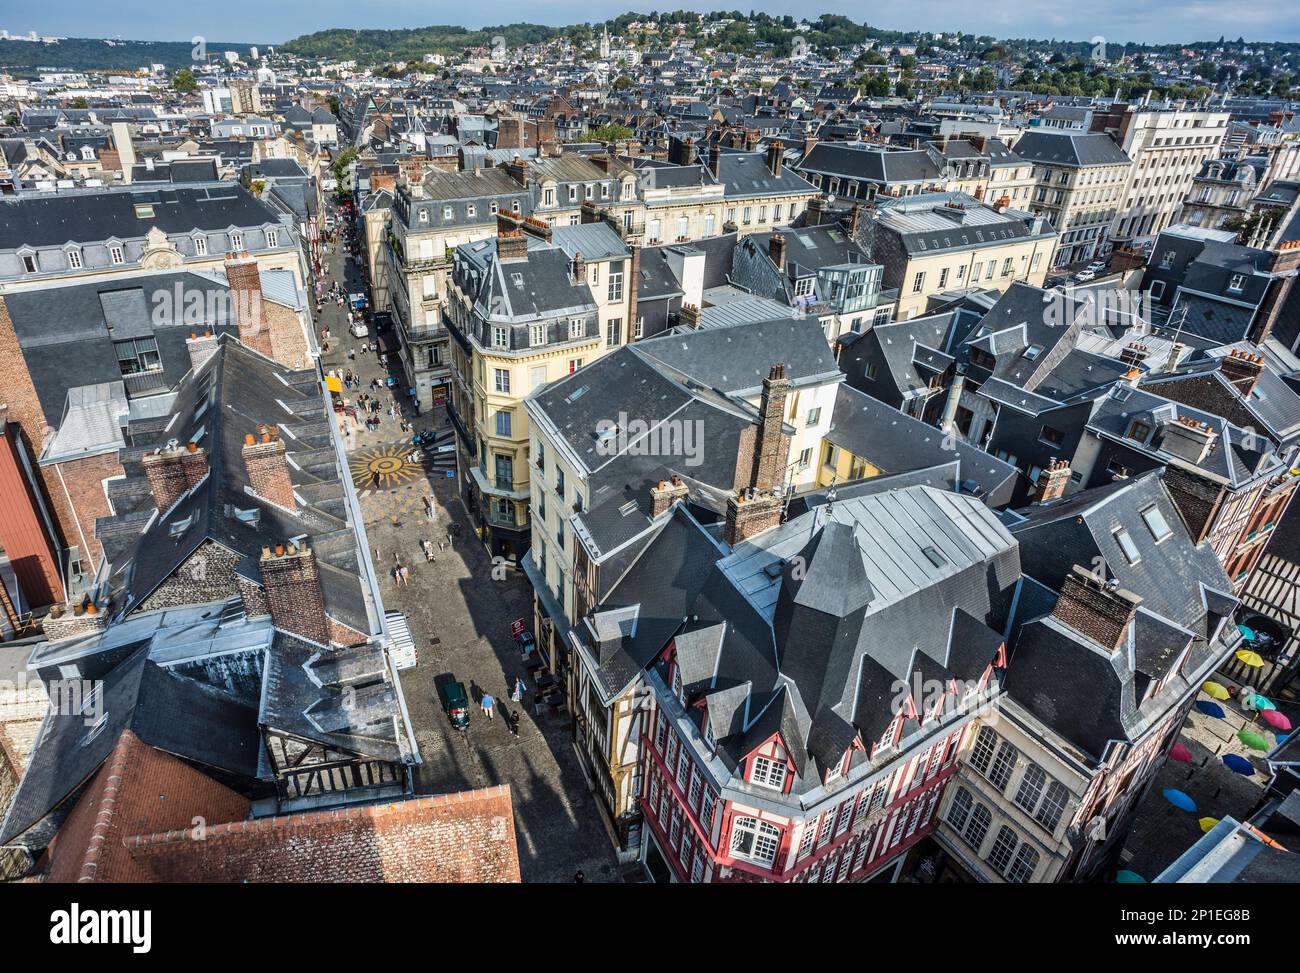 Vista sobre los tejados de Rouen desde el campanario del Gros Horloge, el Reloj Graet, mirando a Rue du Gros-Horloge, Rouen, Normandía, Francia Foto de stock